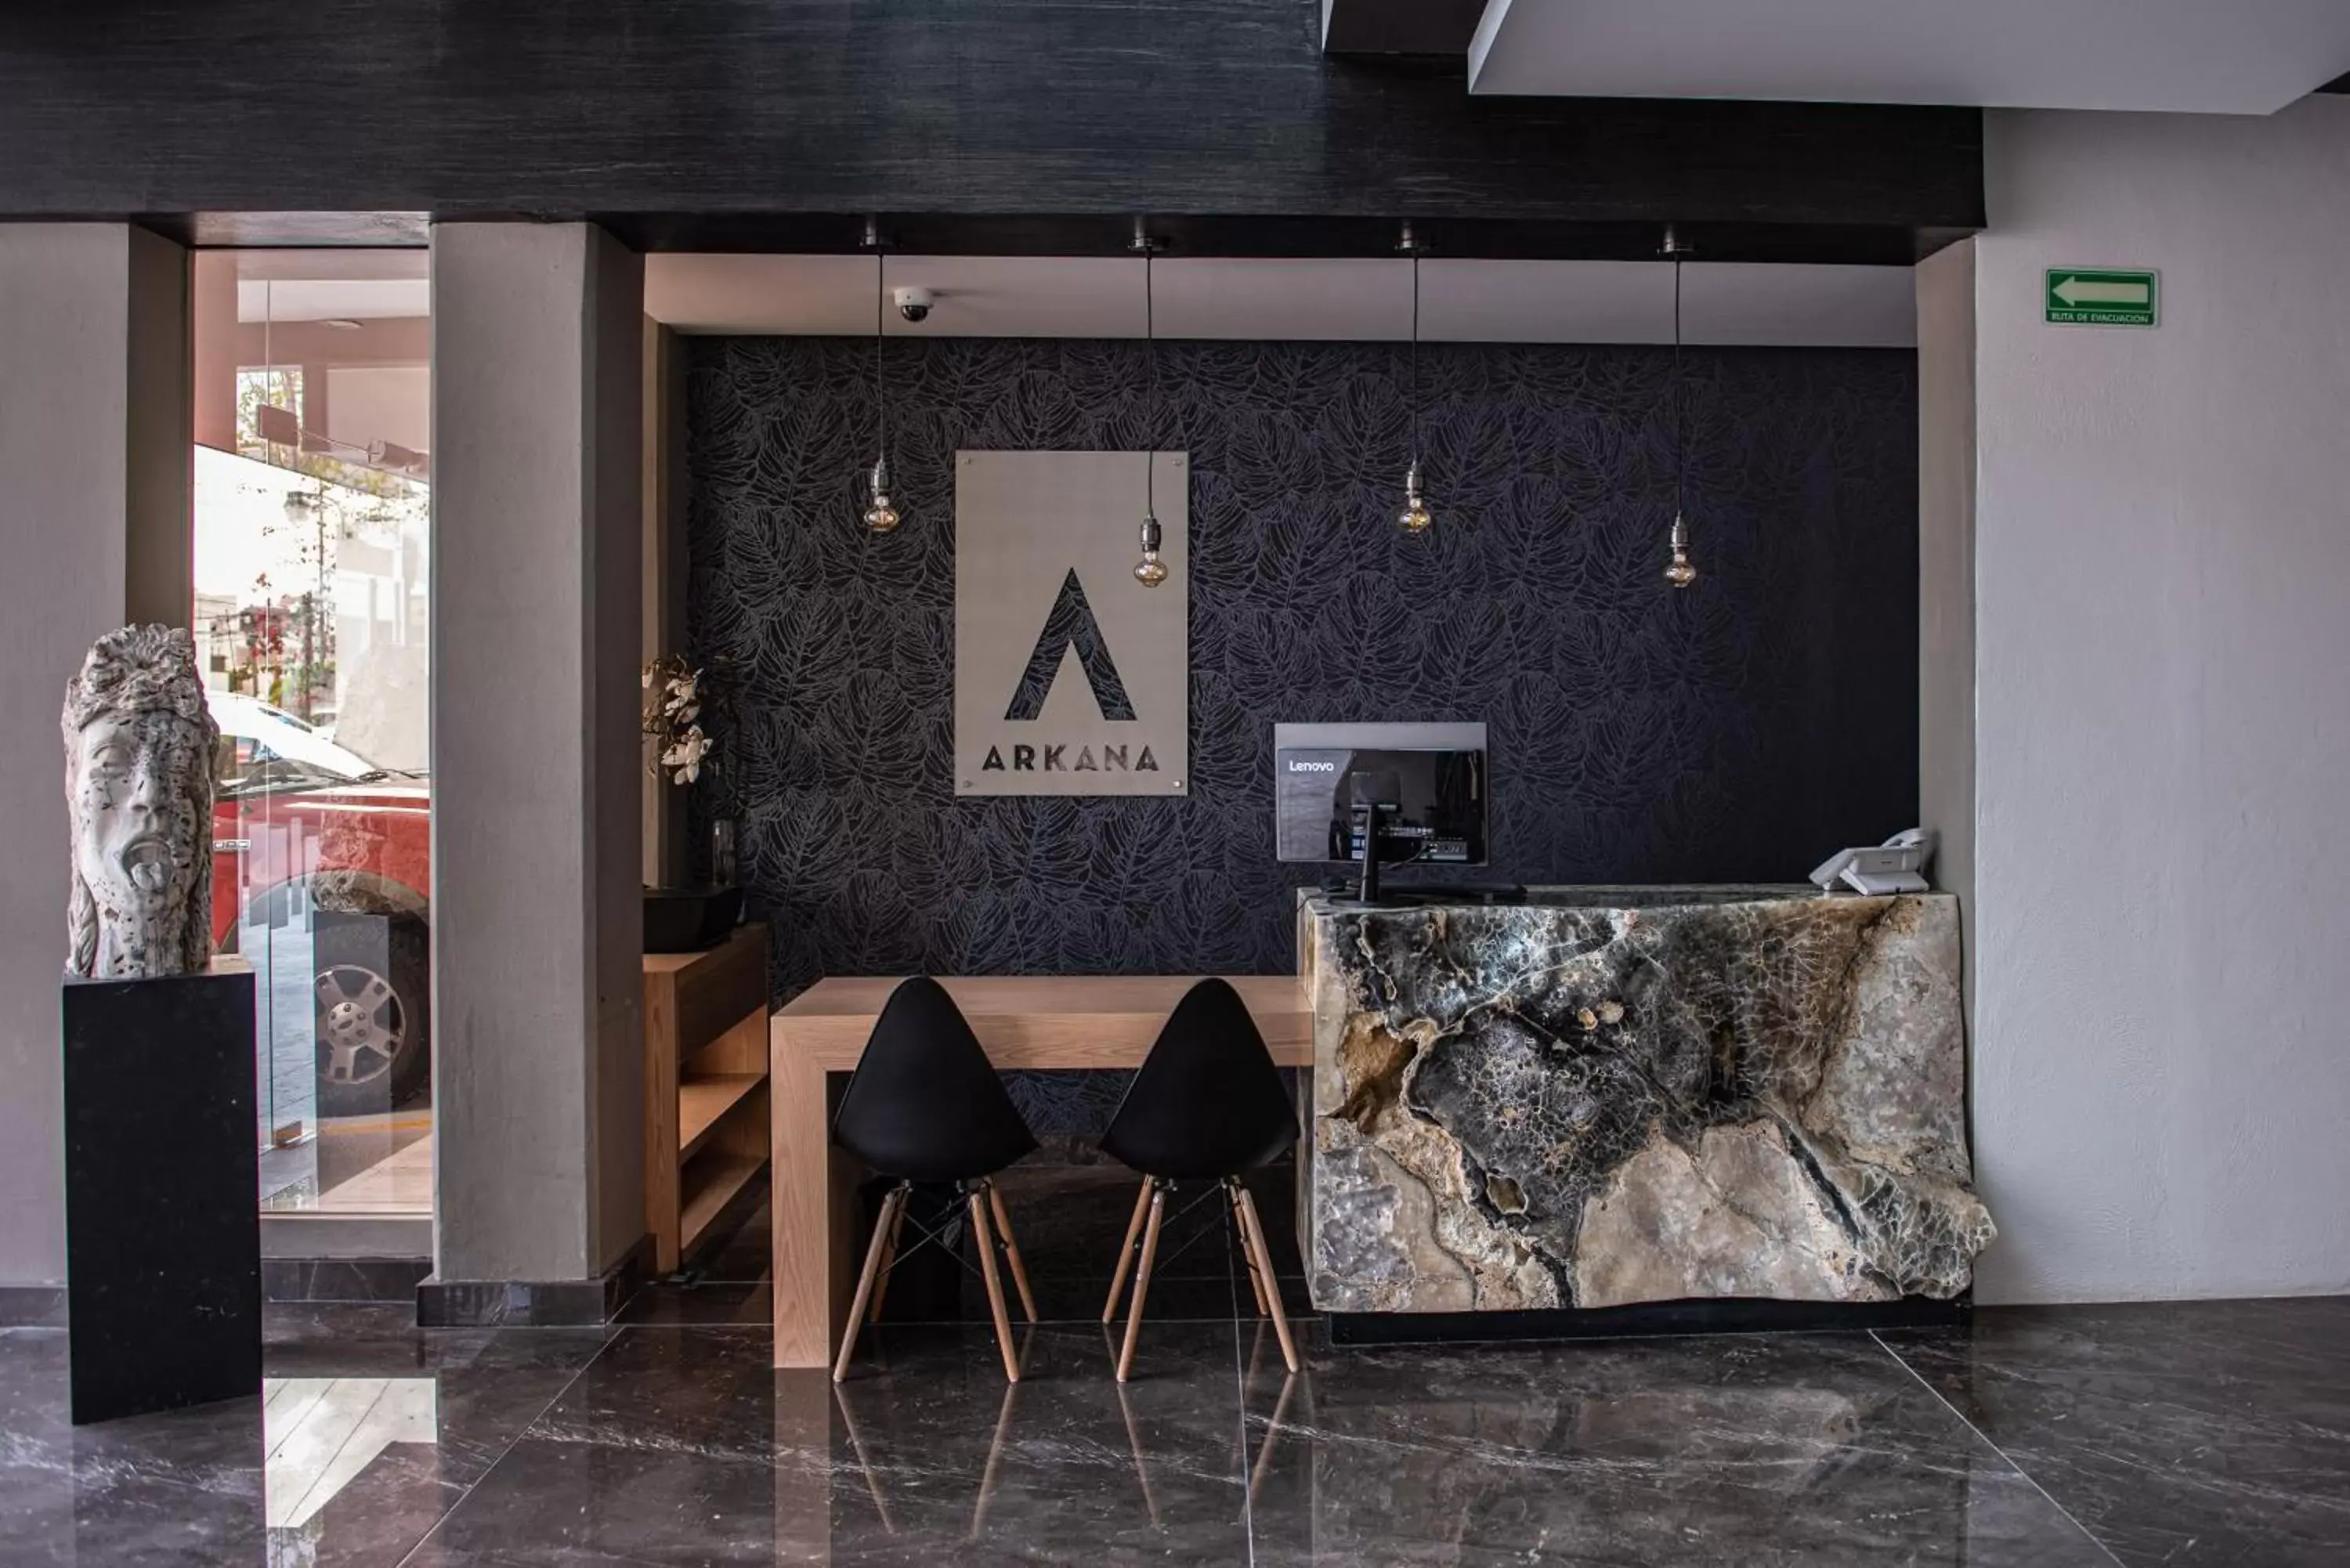 Lobby or reception, Lobby/Reception in Arkana Hotel by Rotamundos